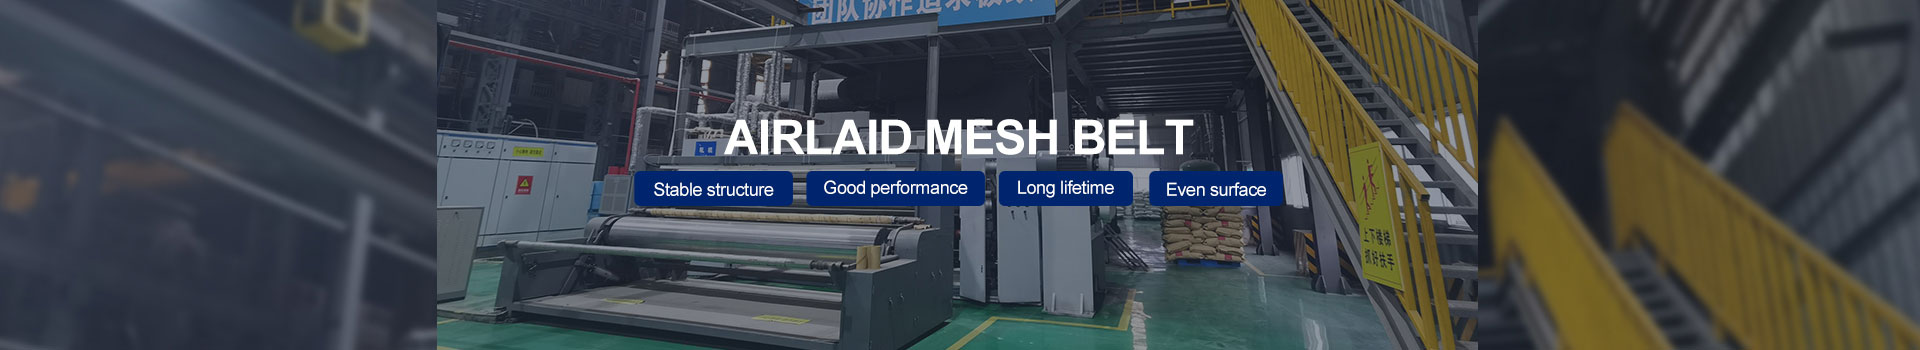 Airlaid mesh belt